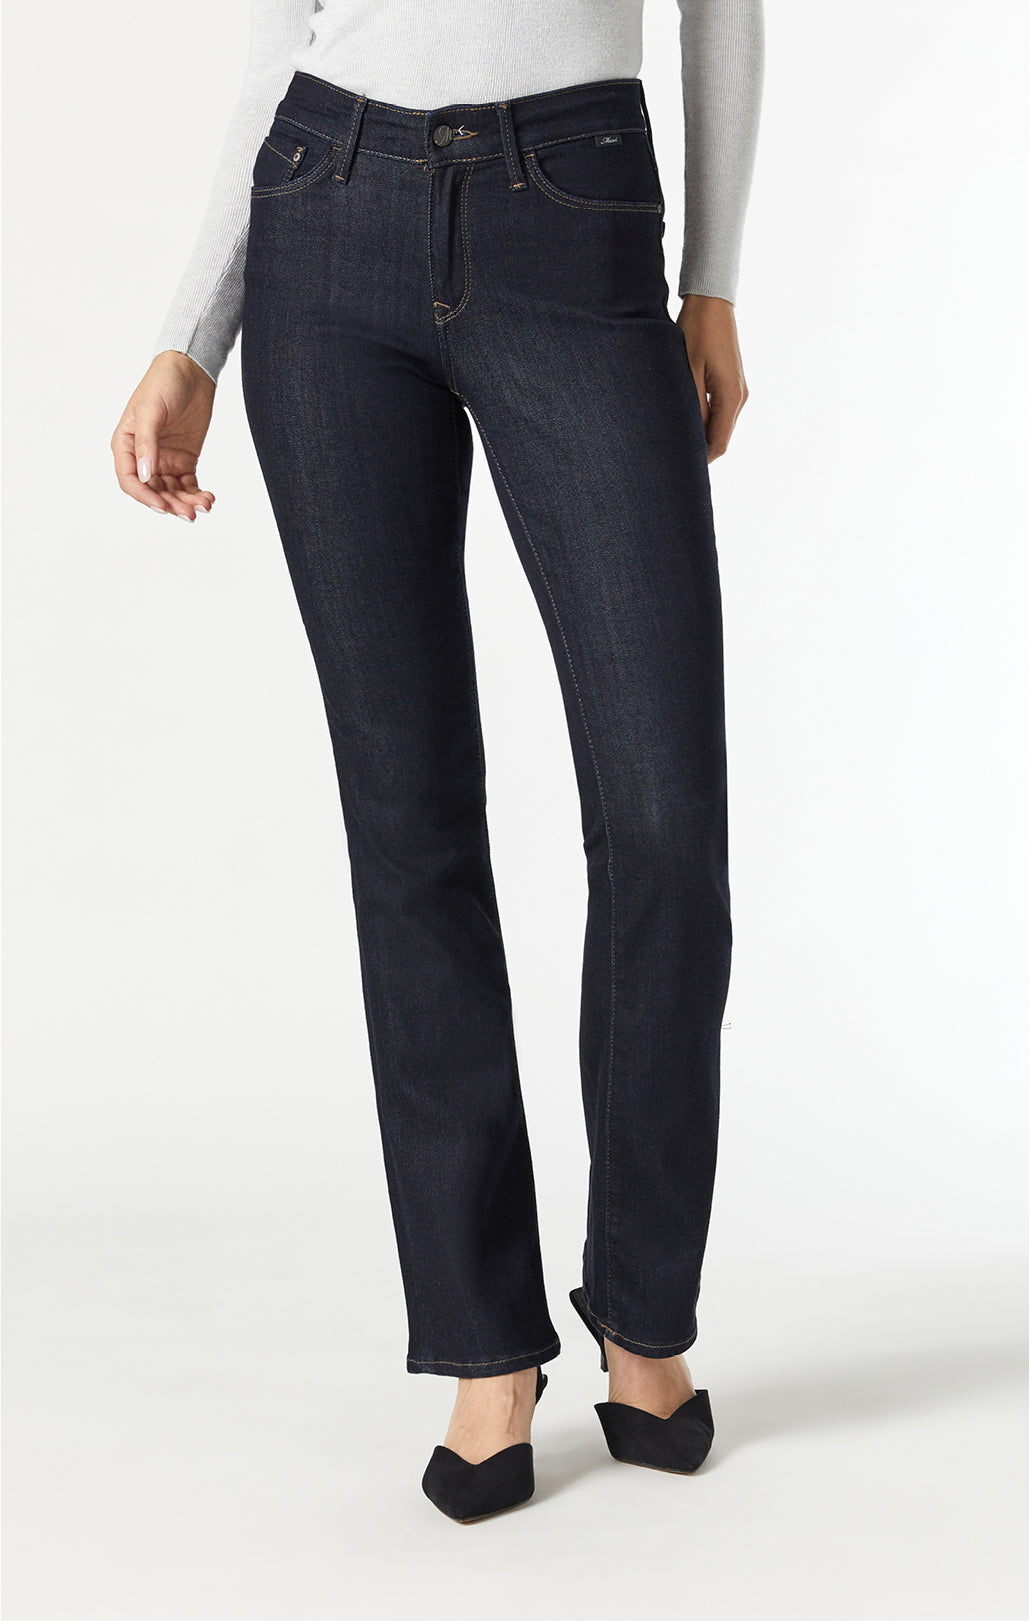 Shop Women's Slim Jeans in Canada